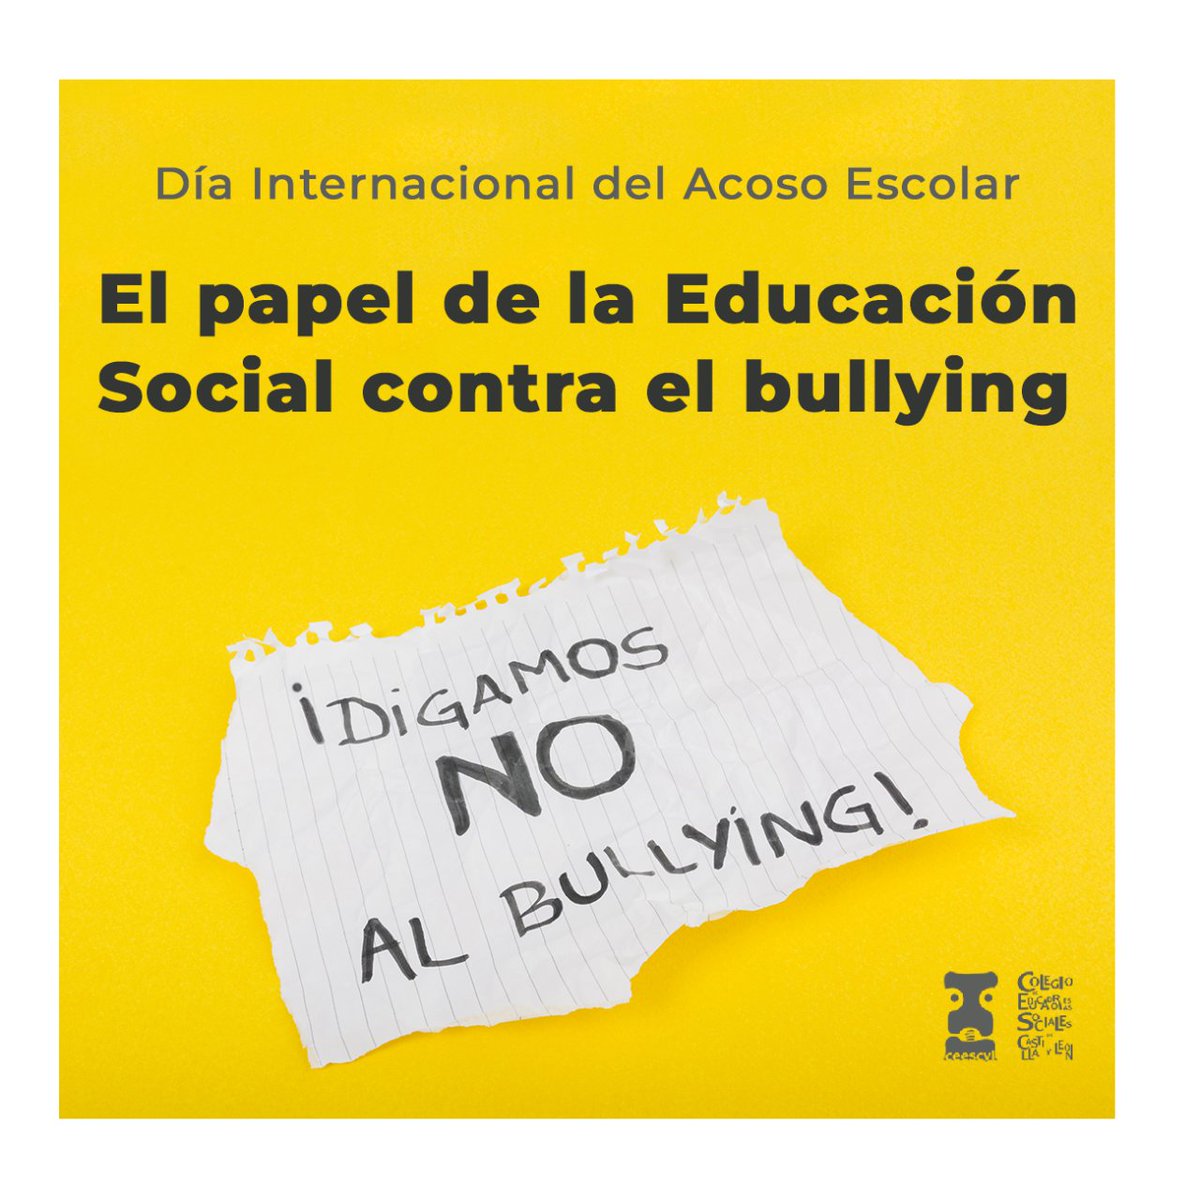 ⚠️ Somos profesionales capacitados y cualificados para prevenir e intervenir en casos de acoso escolar. 📣

#EducaciónSocial #Eduso #AcosoEscolar #Bullying #EdSocial